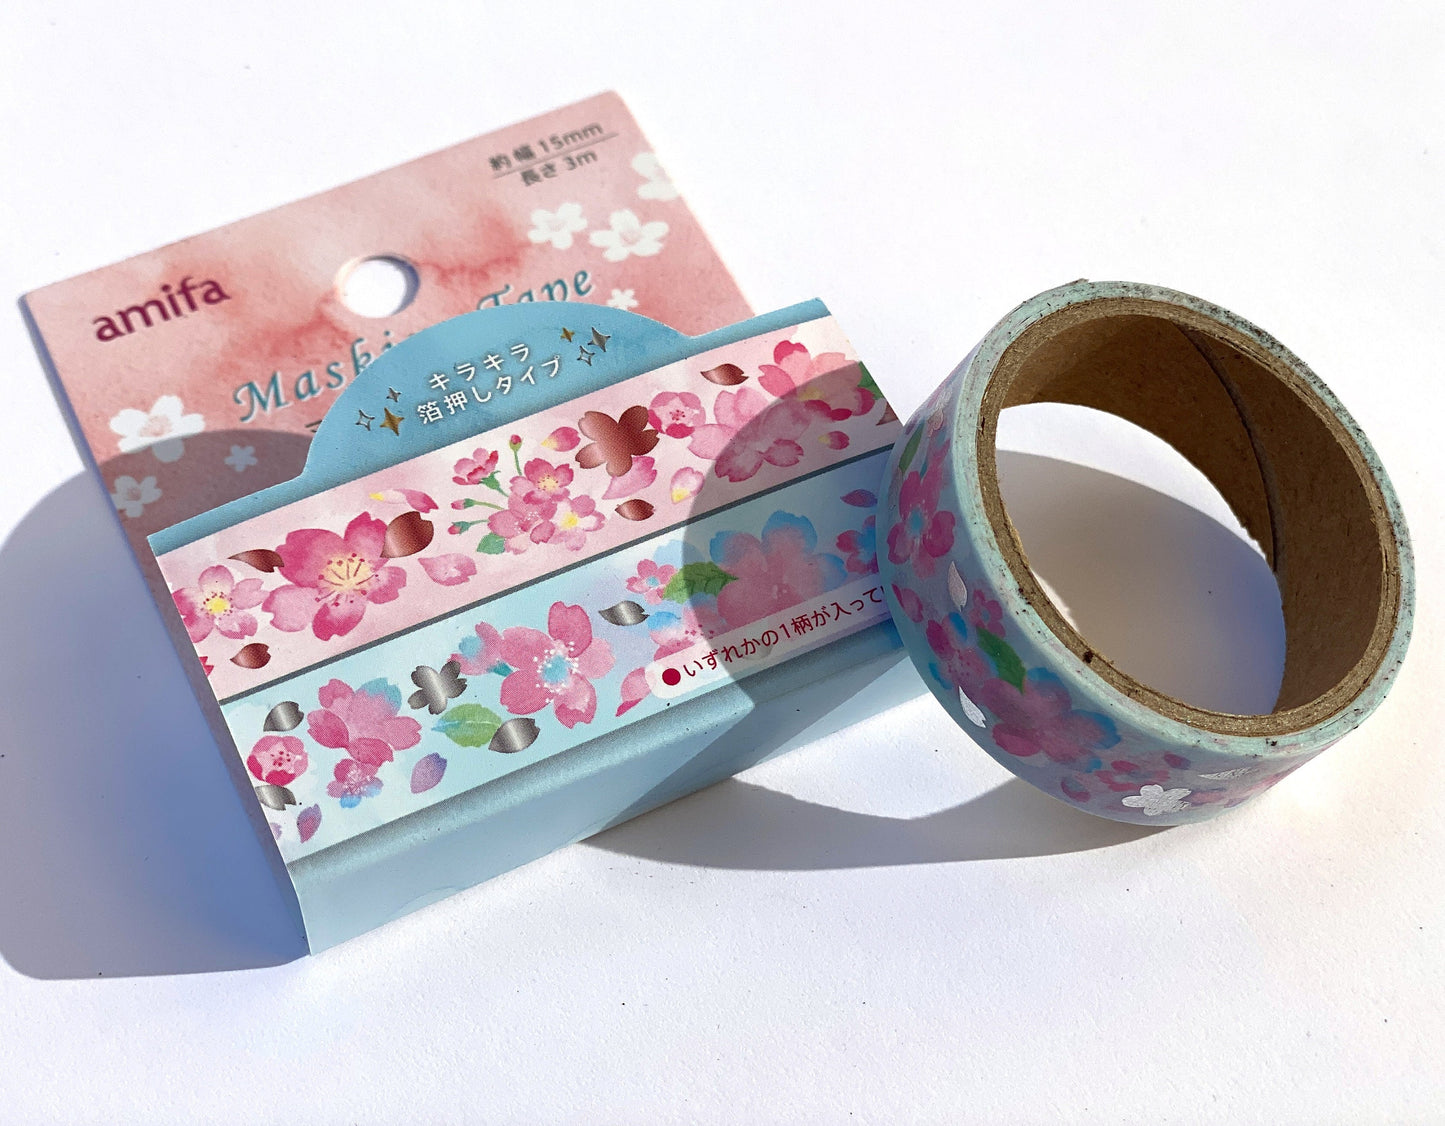 Blumen mit Gold / Silber- Folienapplikation, Washi Tape/Masking Tape 15mm